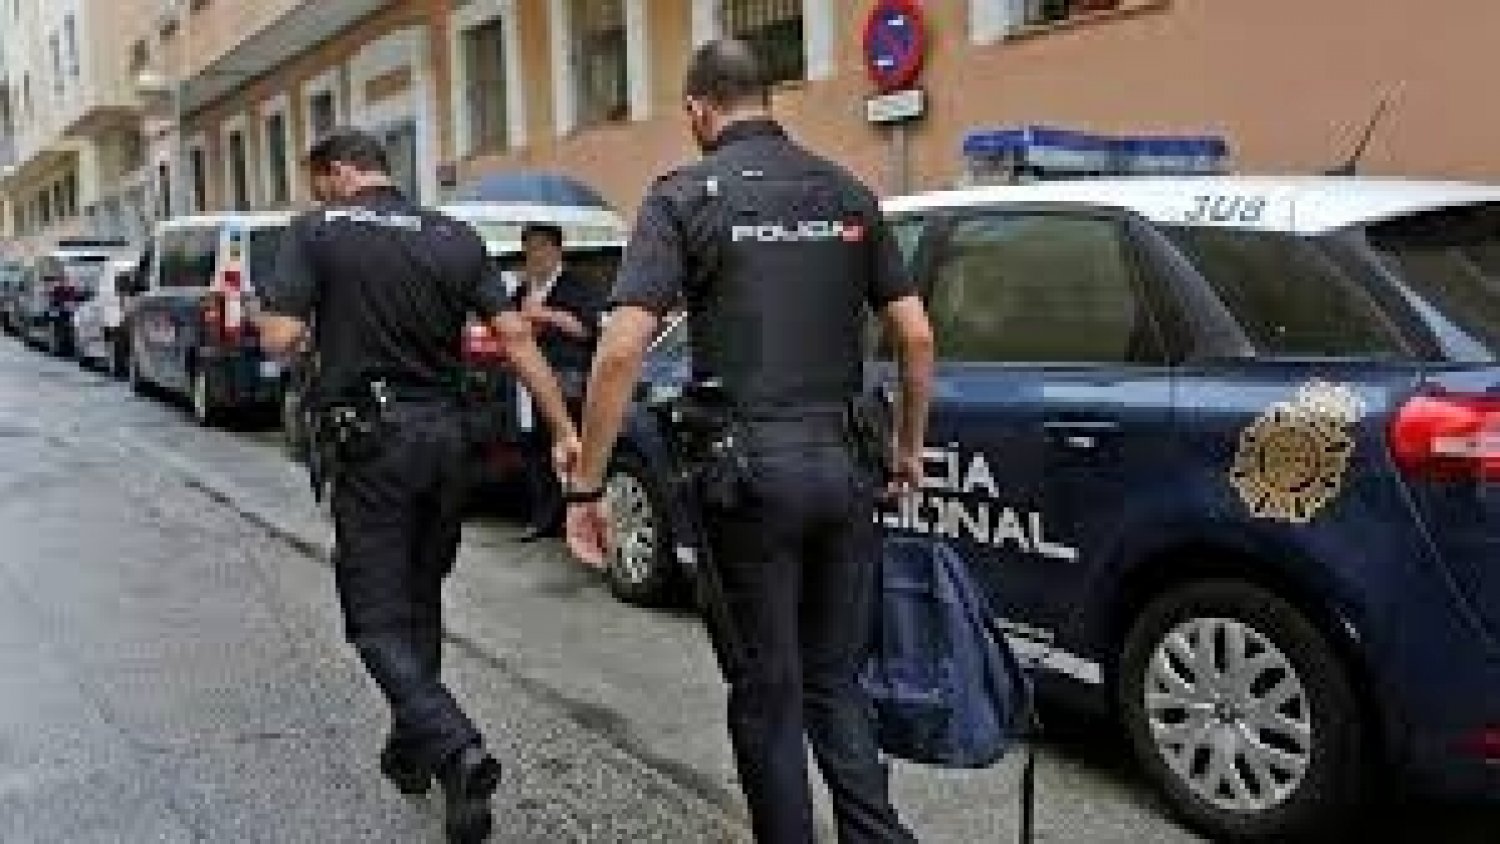 PPolicía Nacional detiene en Marbella a cuatro personas por robos de relojes de alta gama